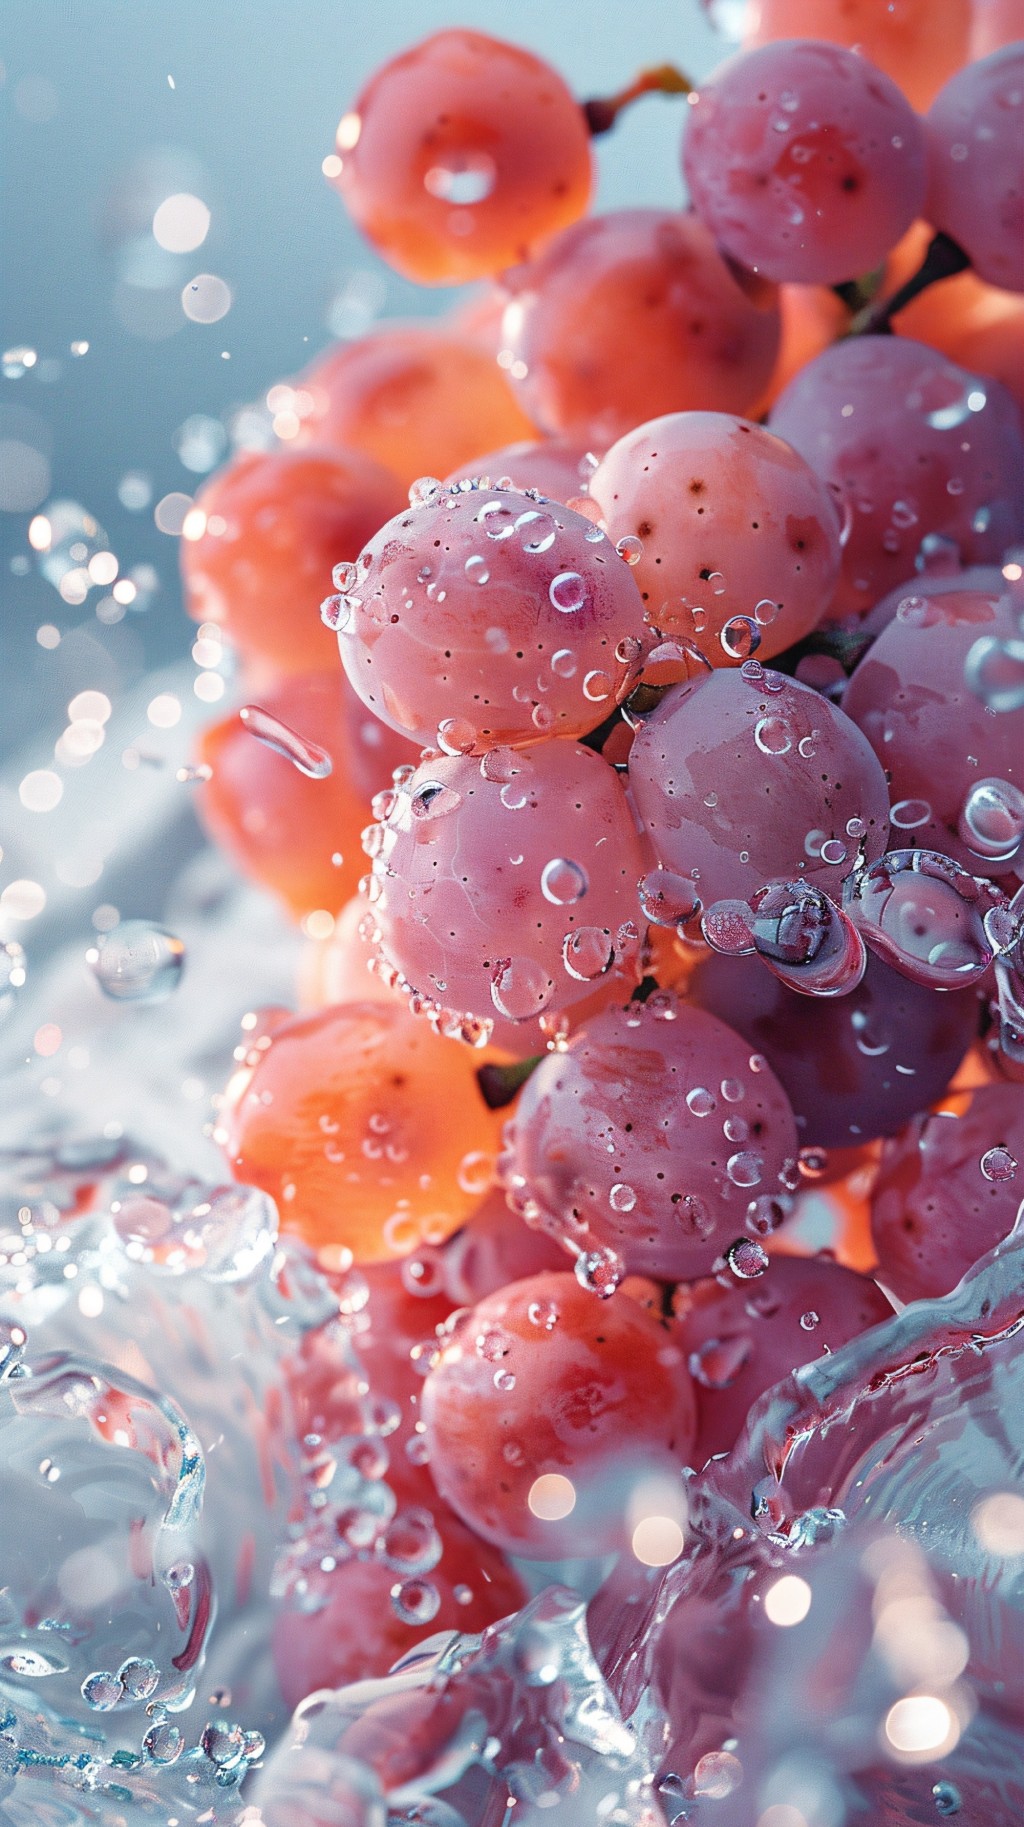 水果摄影大片系列——葡萄